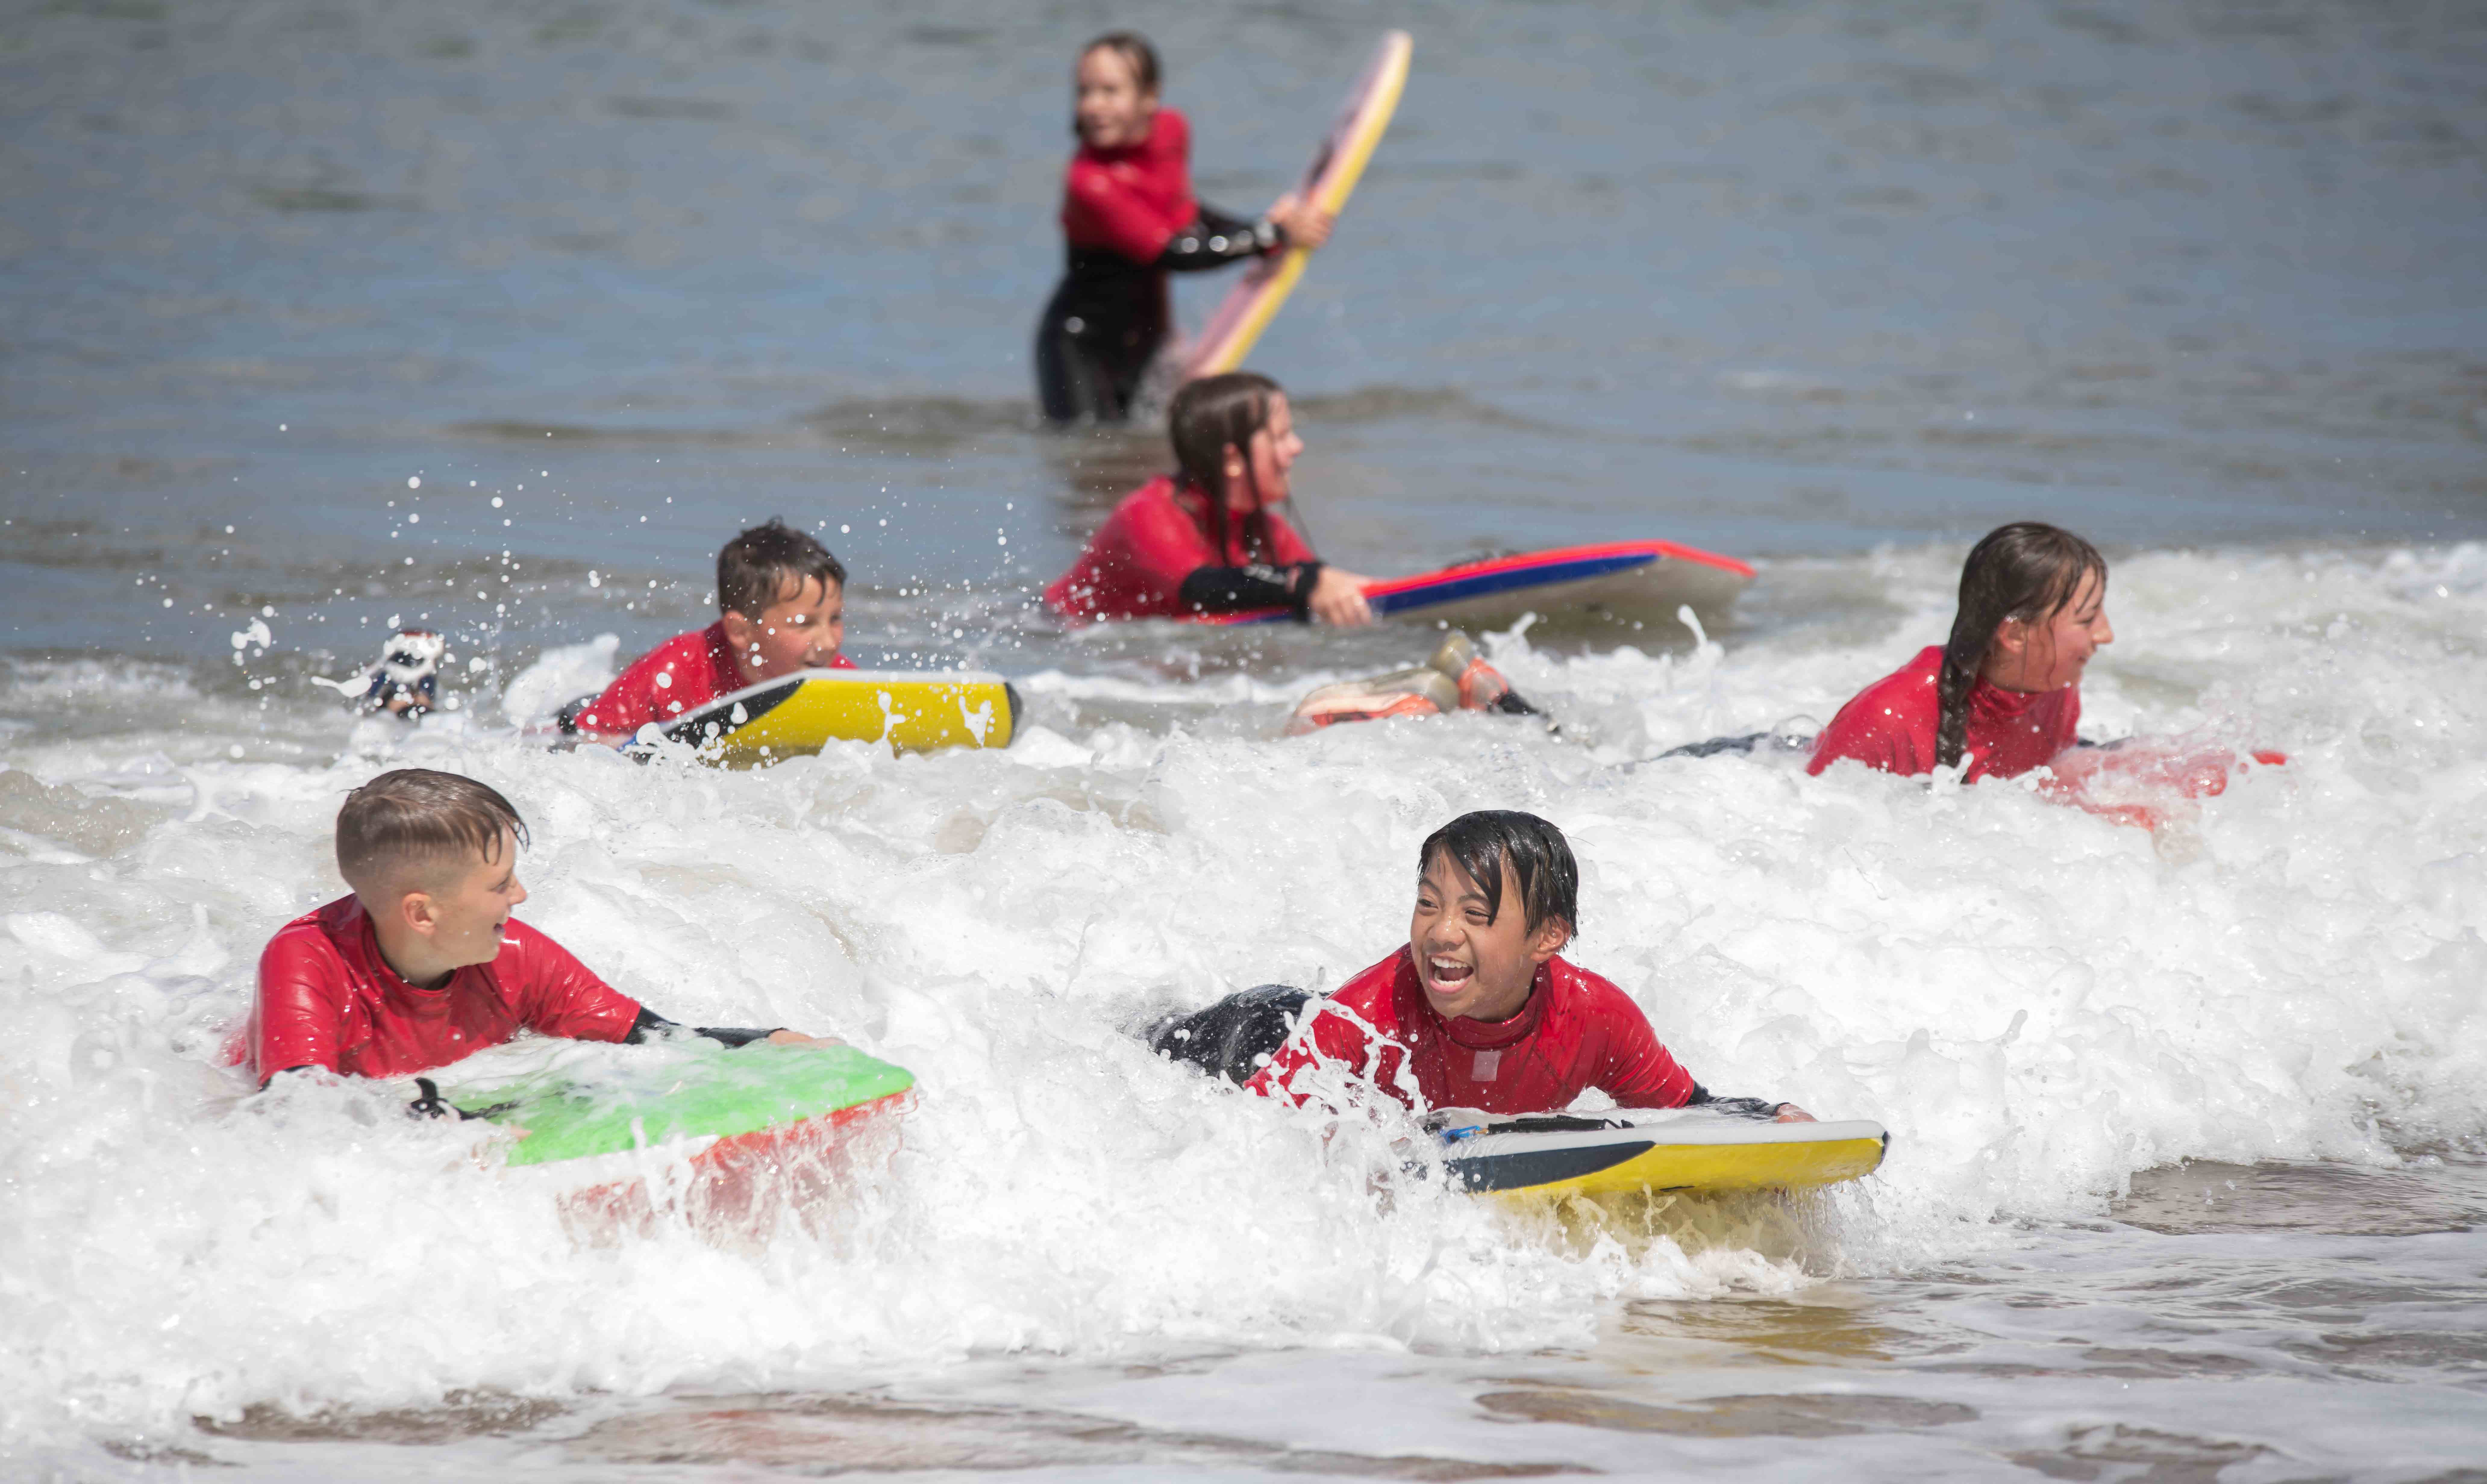 Children on surf boards